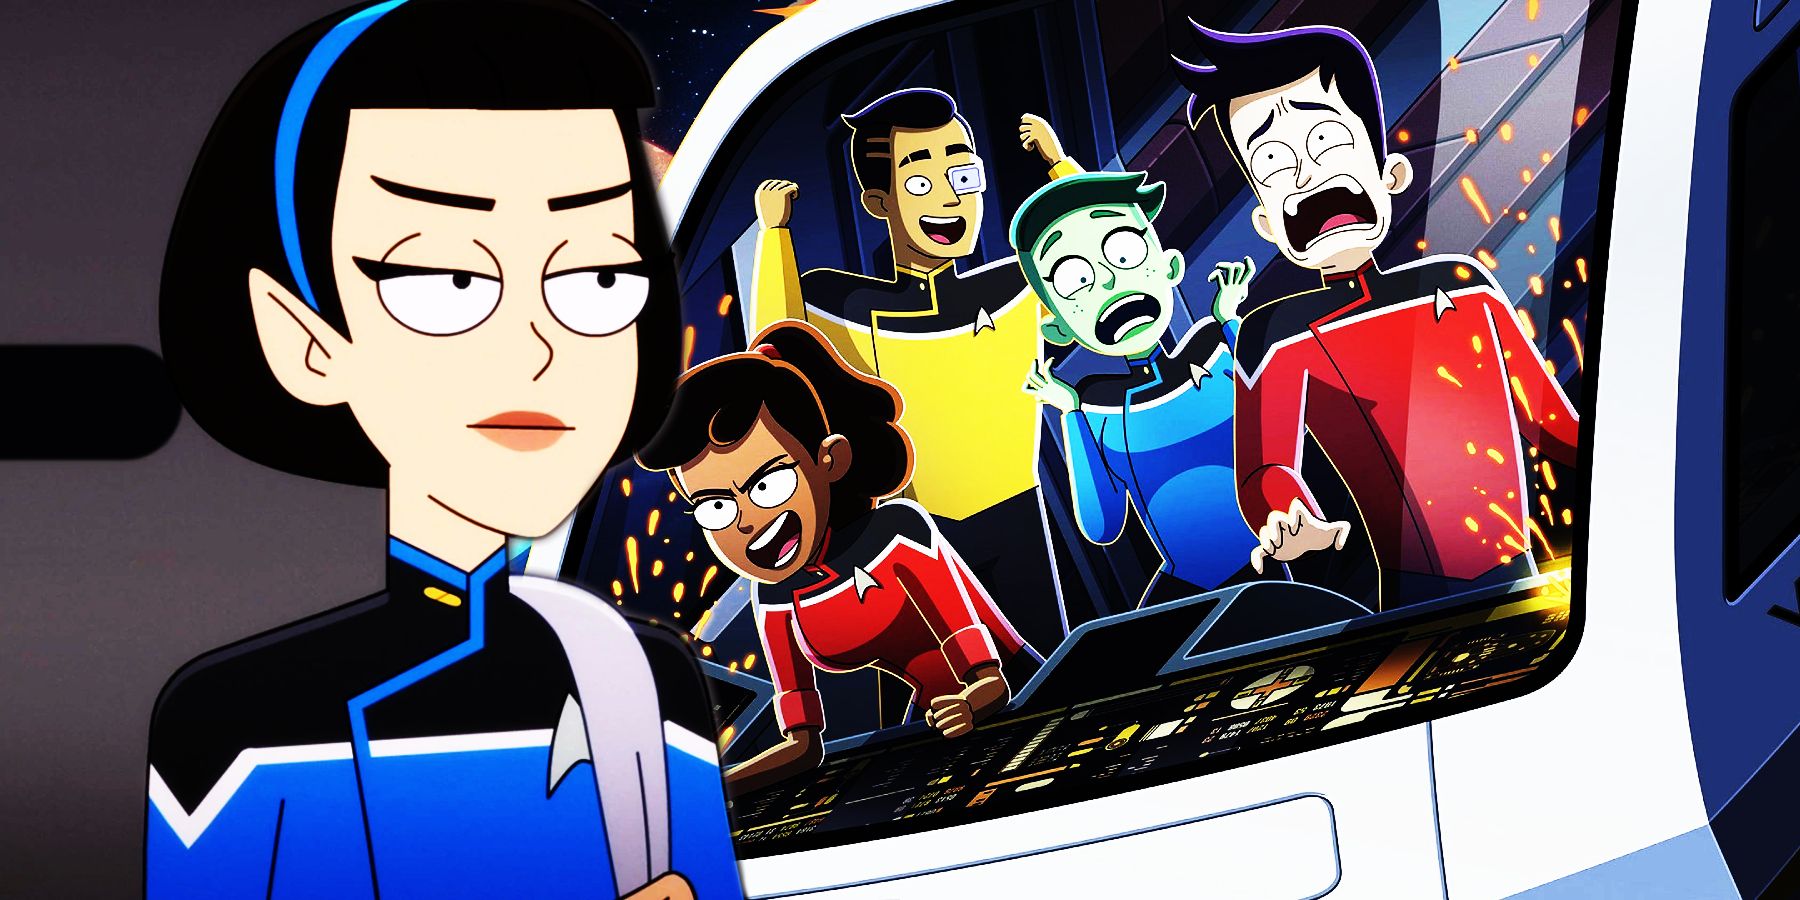 Tawny Newsome Jokes She’ll “Definitely” Take Over Star Trek